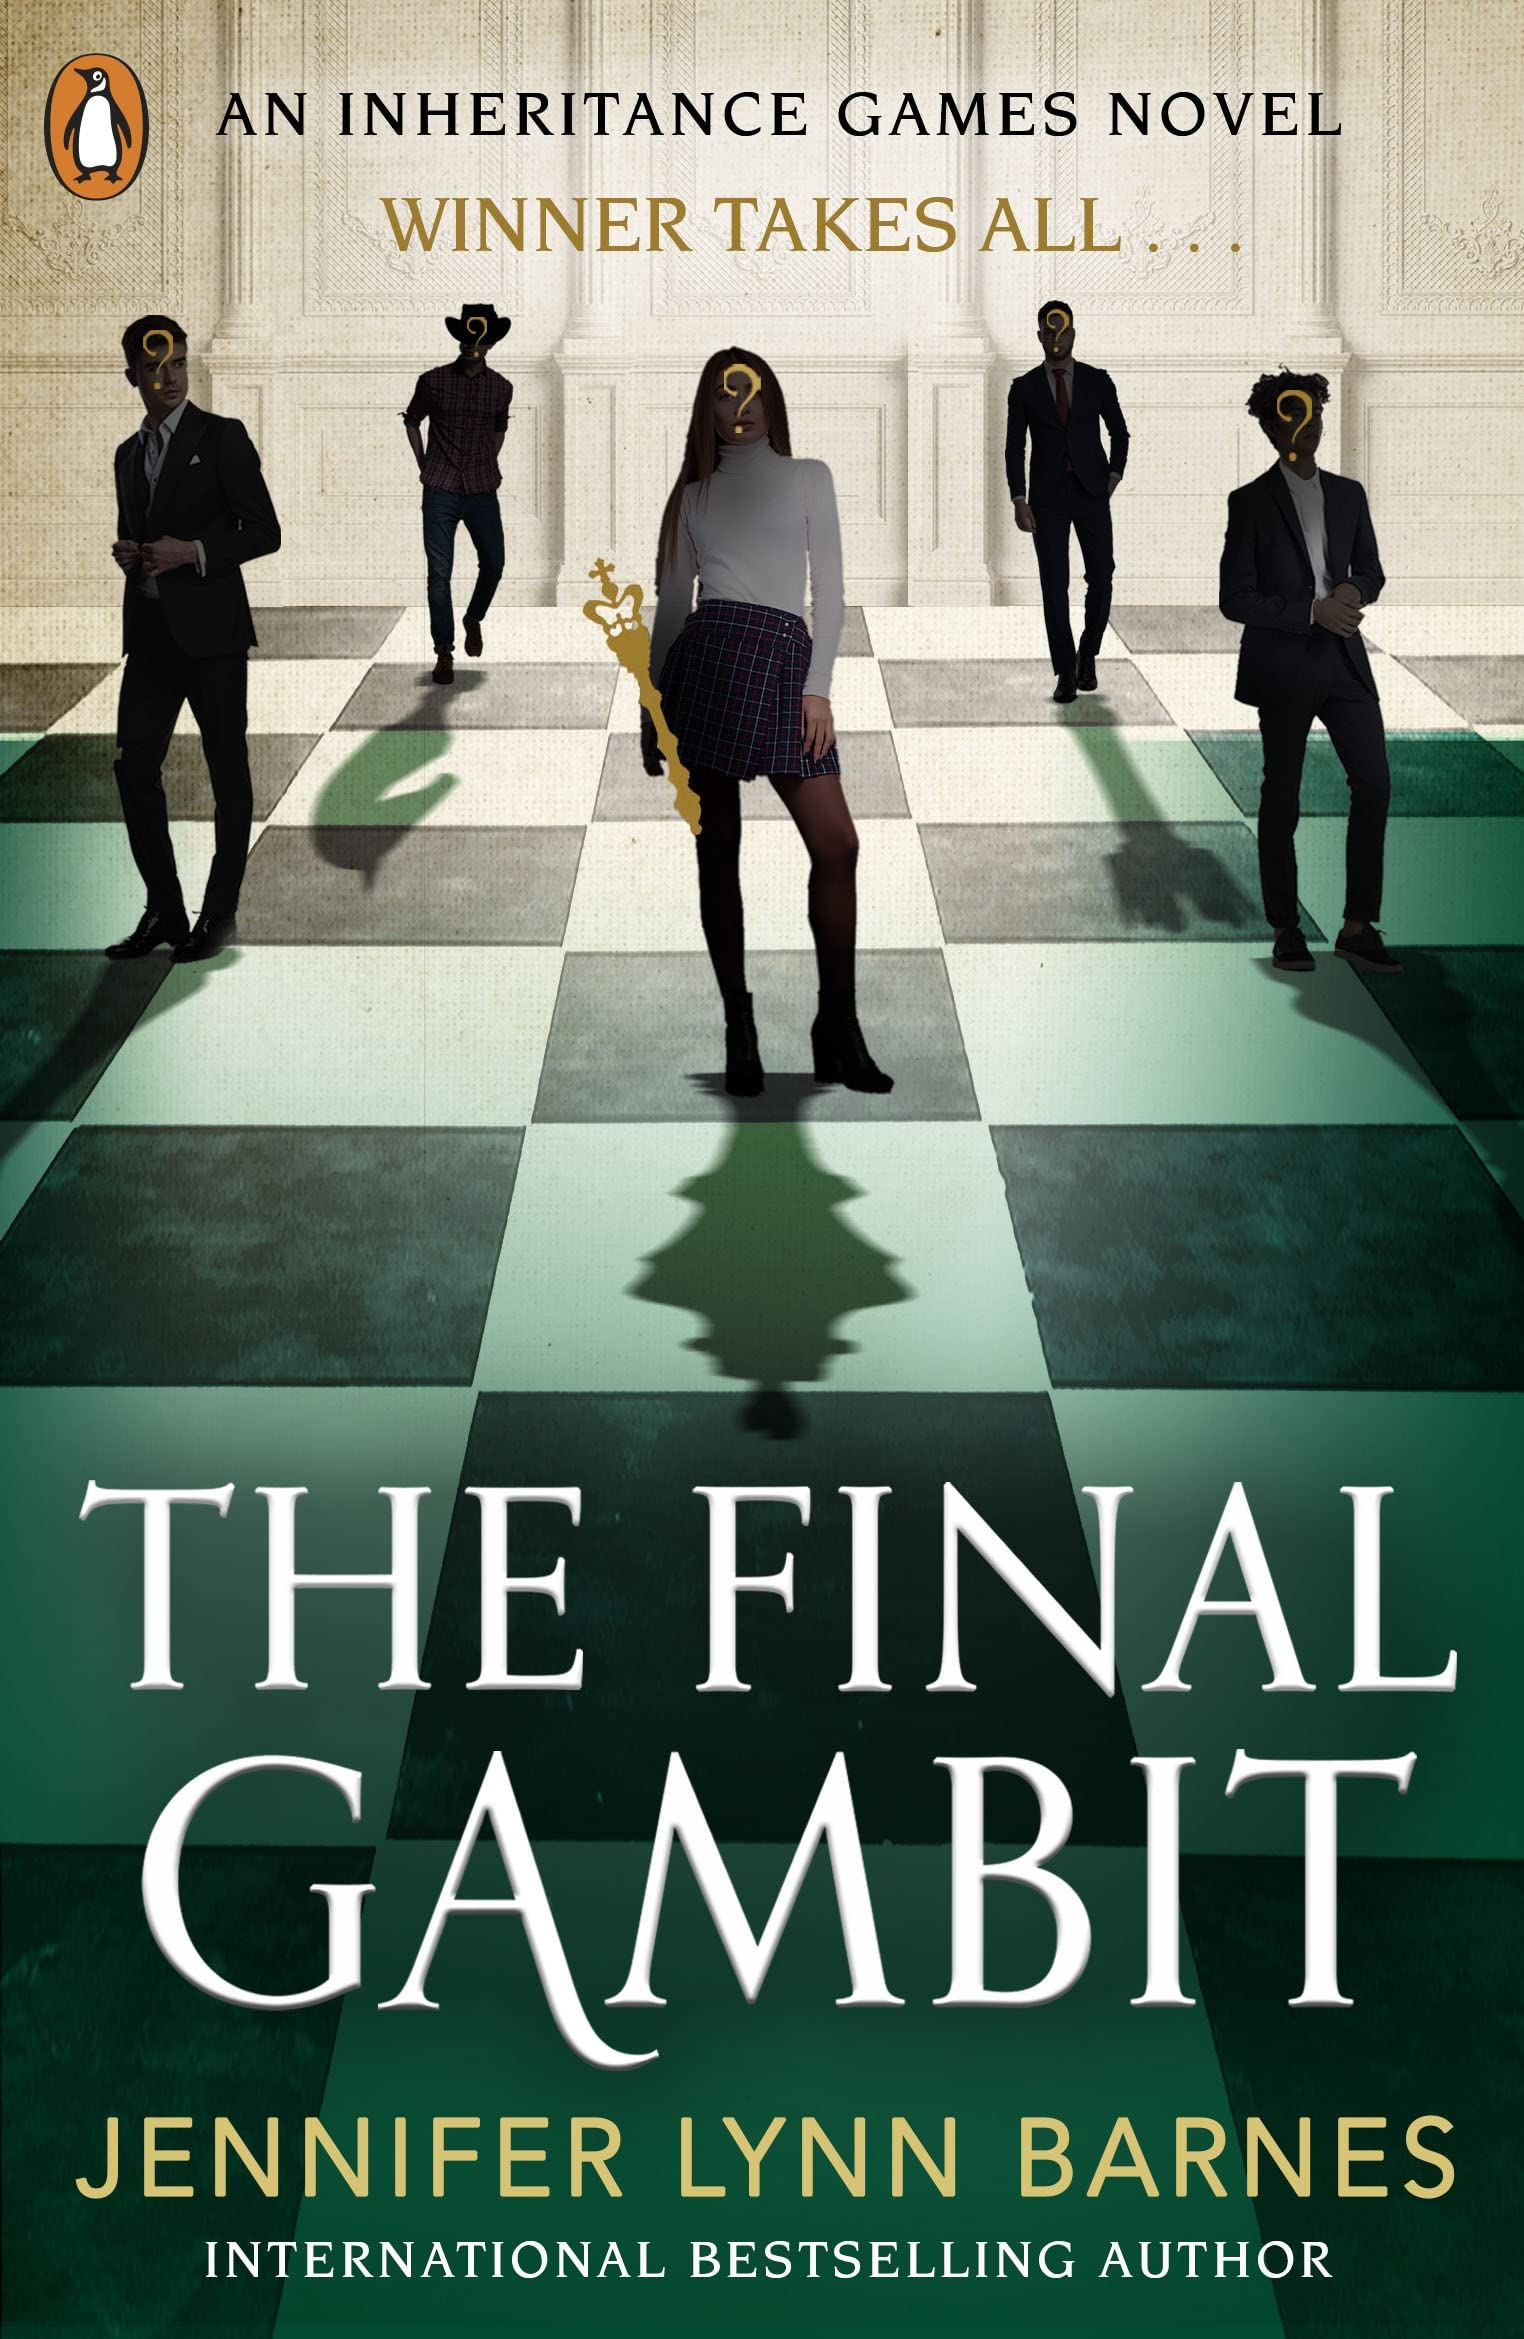 Coperta cărții: The Final Gambit - lonnieyoungblood.com